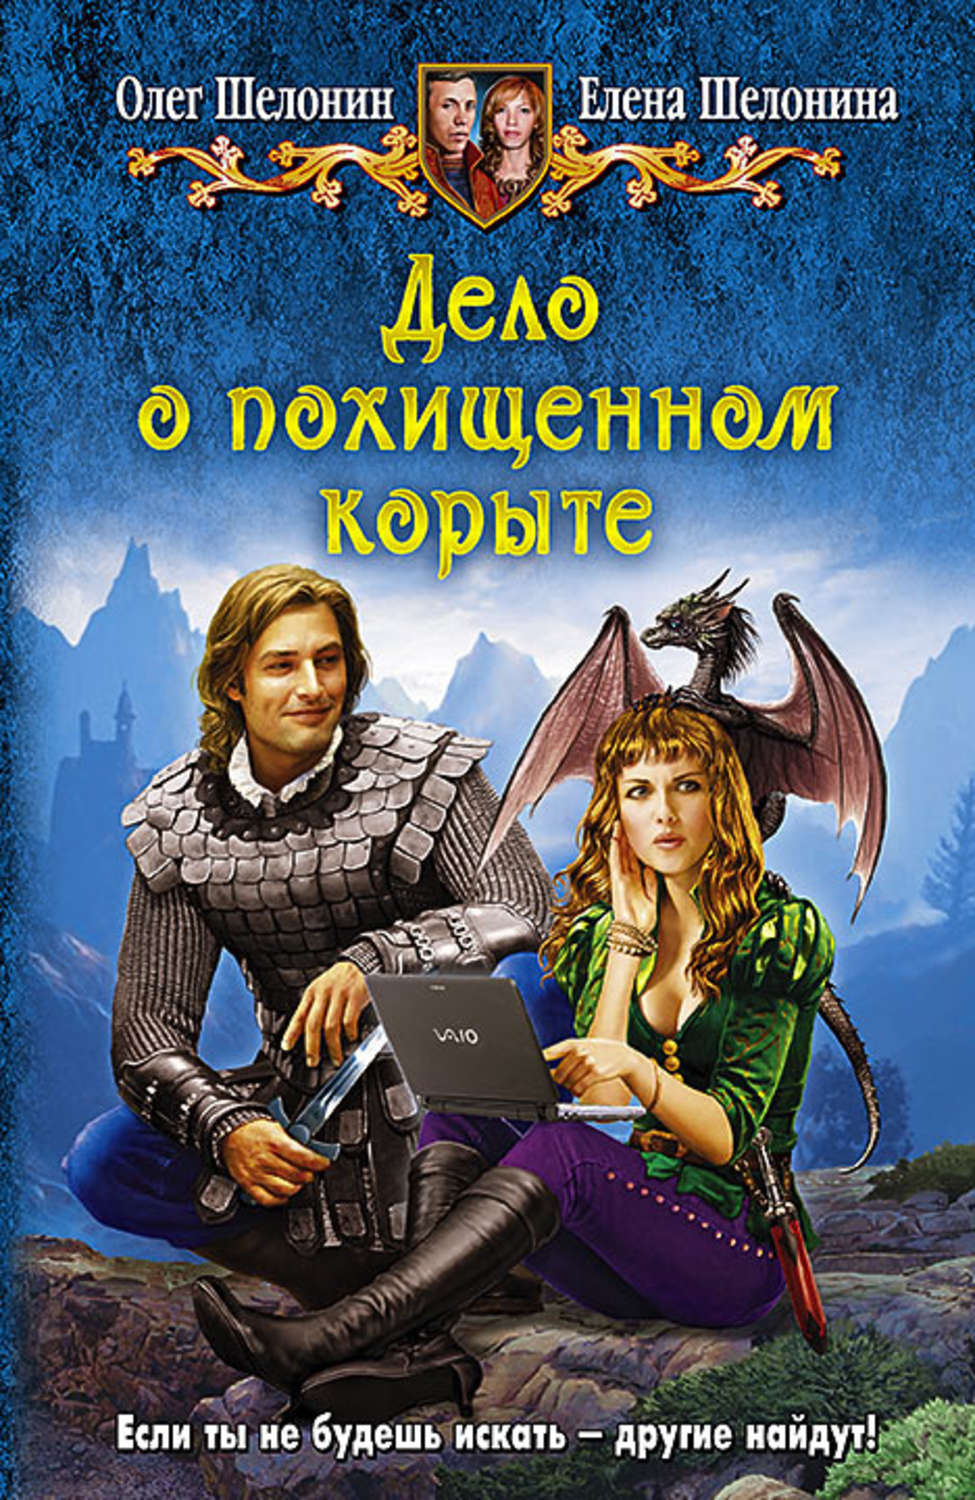 Олег шелонин все книги автора скачать бесплатно